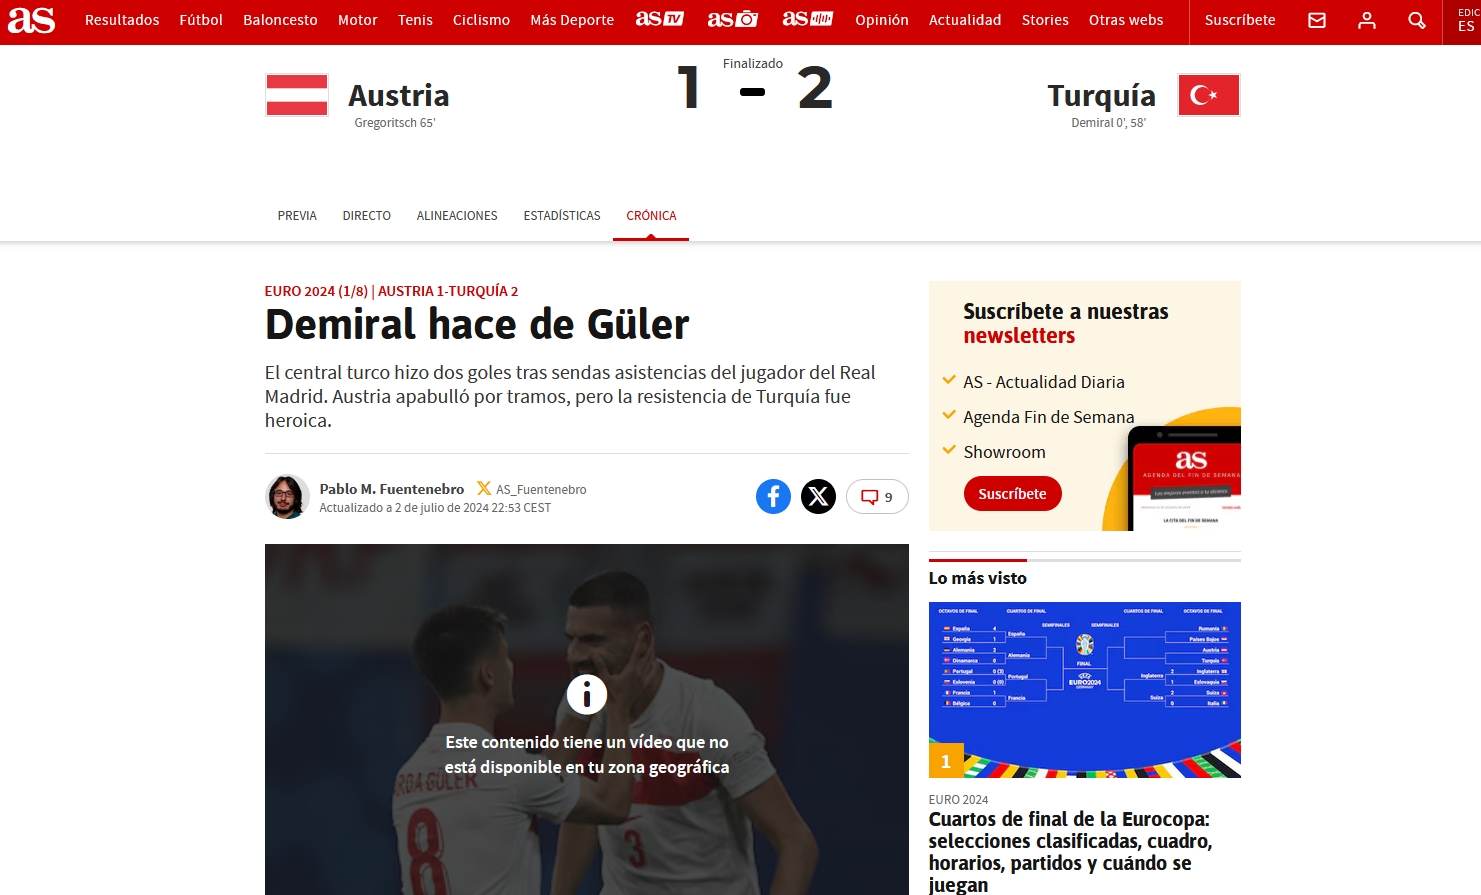 Avrupa’da Avusturya-Türkiye maçı yankıları: Mucize kurtarış!